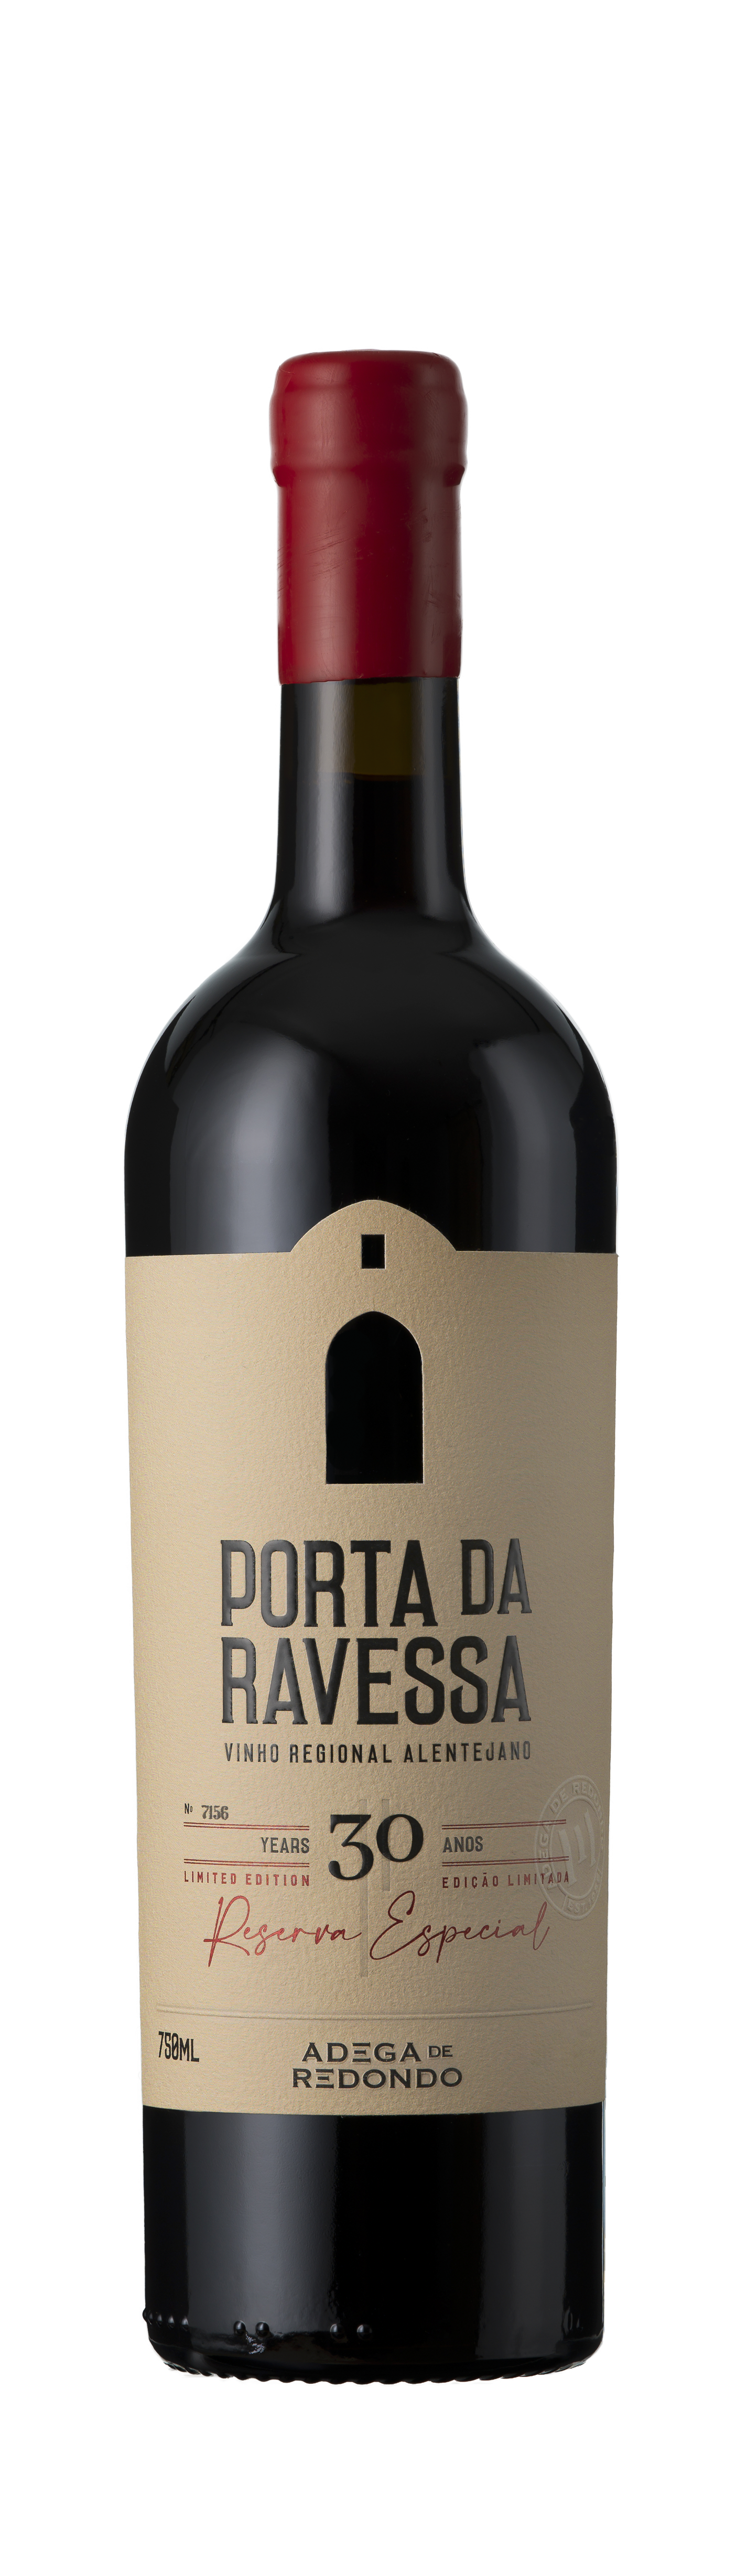 Adega de Redondo, Porta da Ravessa Reserva especial Tinto, Vinho Regional Alentejano, Portugal, 2020